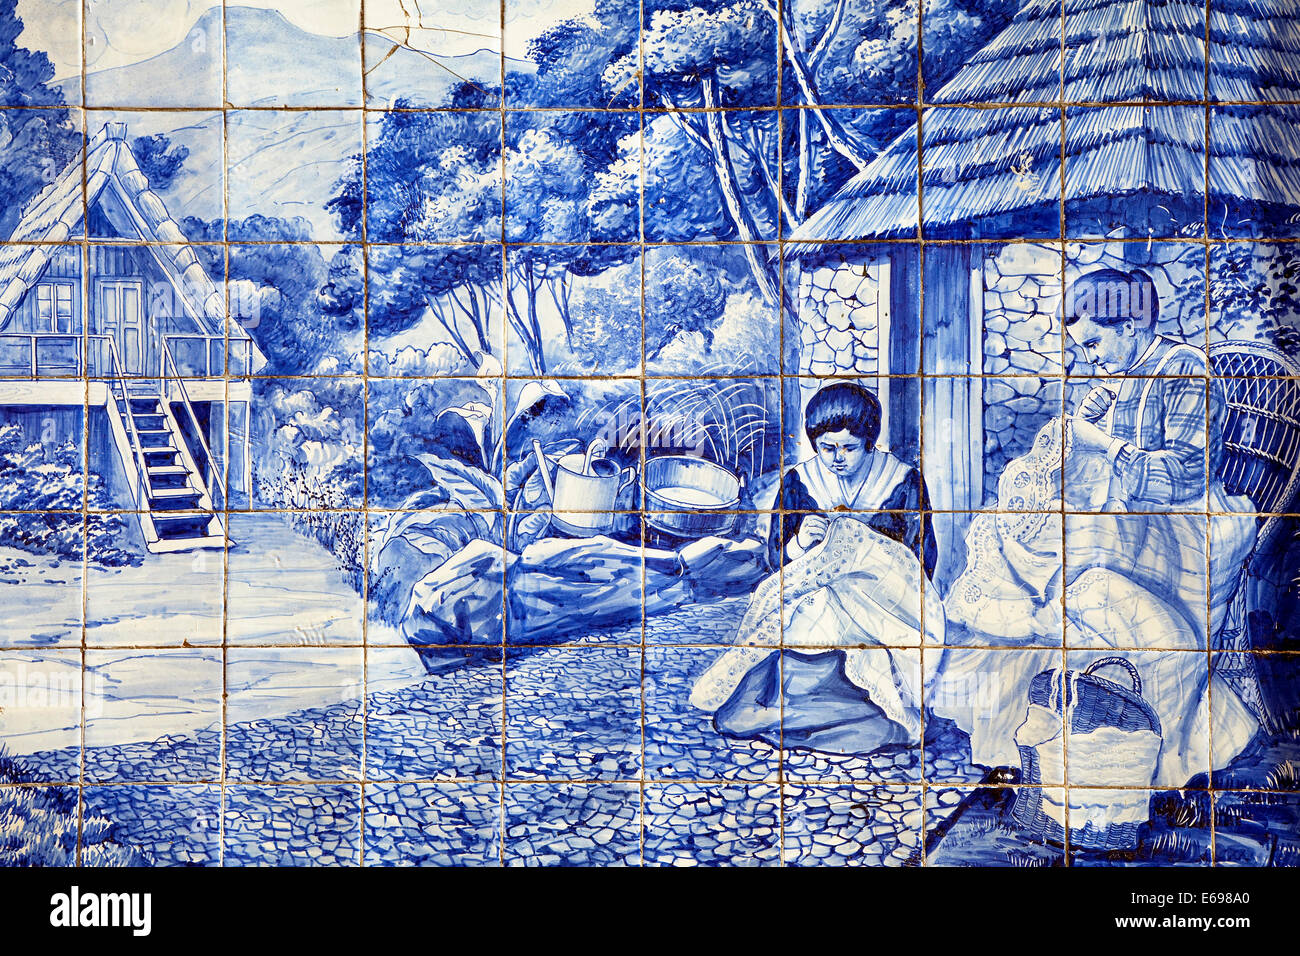 Carreaux peints, Azulejo, deux femmes faisant de la broderie, Madeira, Portugal Banque D'Images